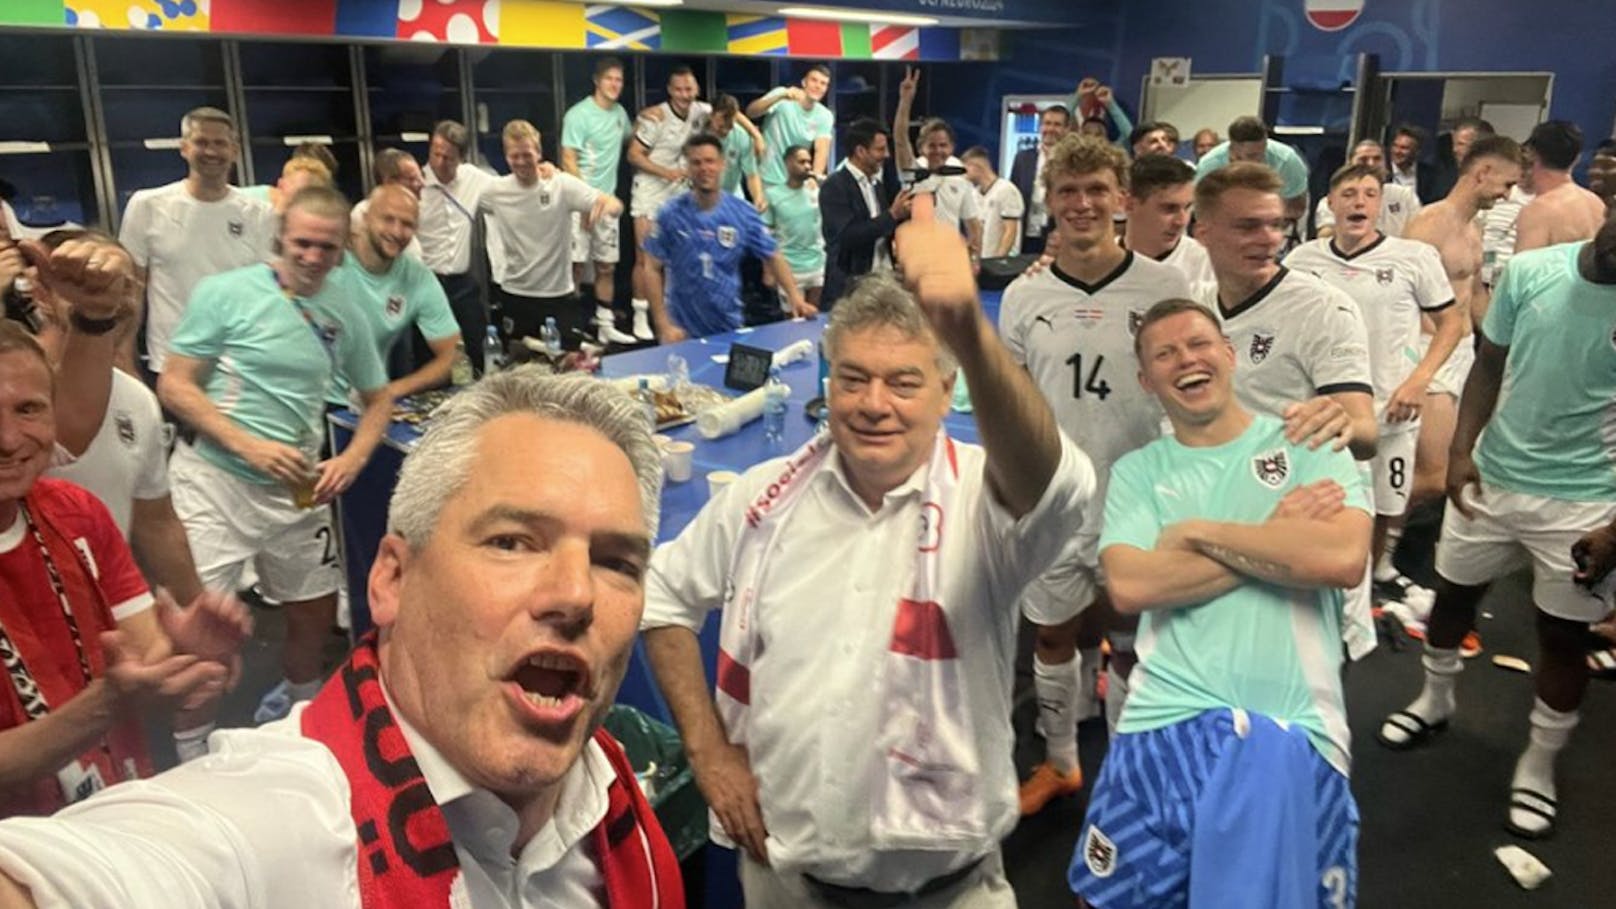 Kanzler-Besuch bei Fußball-Helden in der Kabine